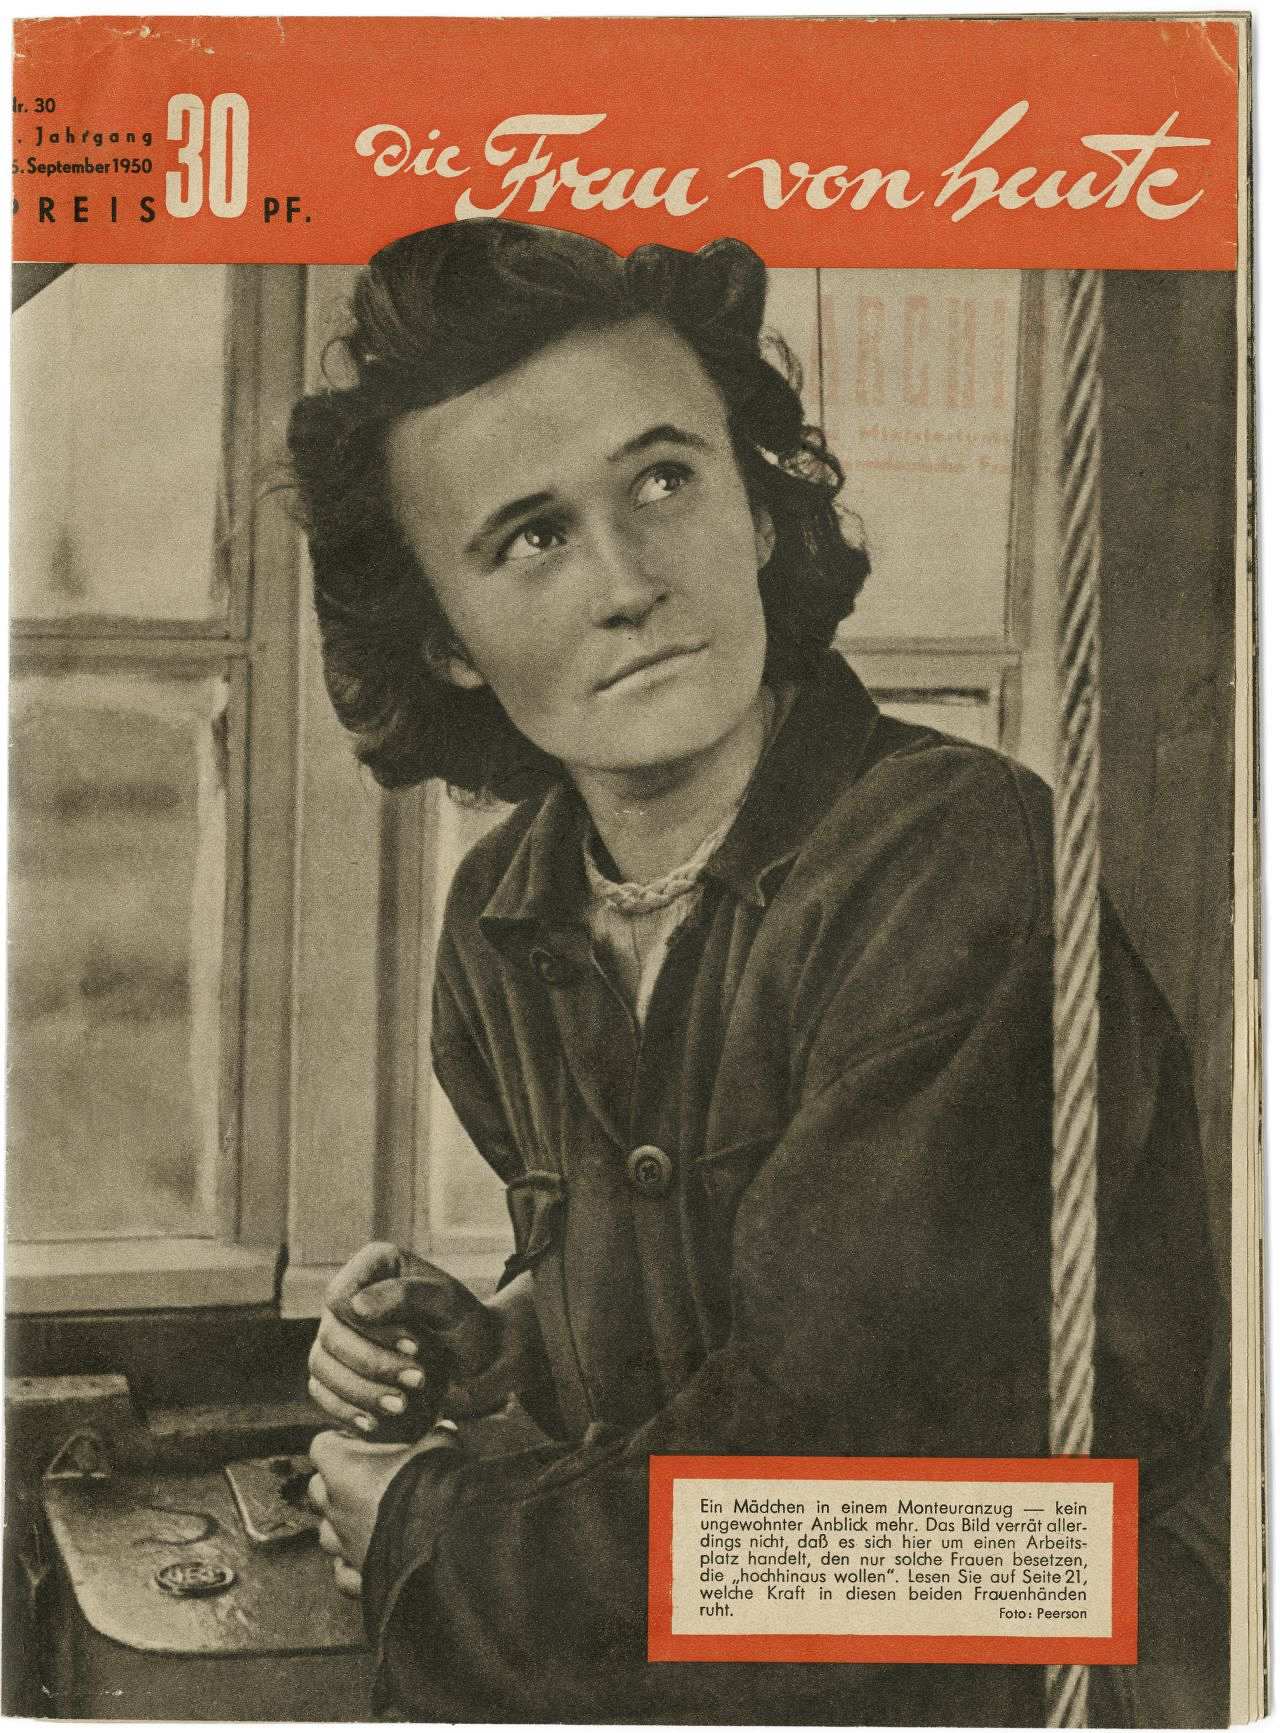 Titelseite der Zeitschrift Frau von heute mit schwarz-weiß-Foto einer nach oben schauenden Frau. Orangene Titelzeile mit dem Namen der Zeitschrift.